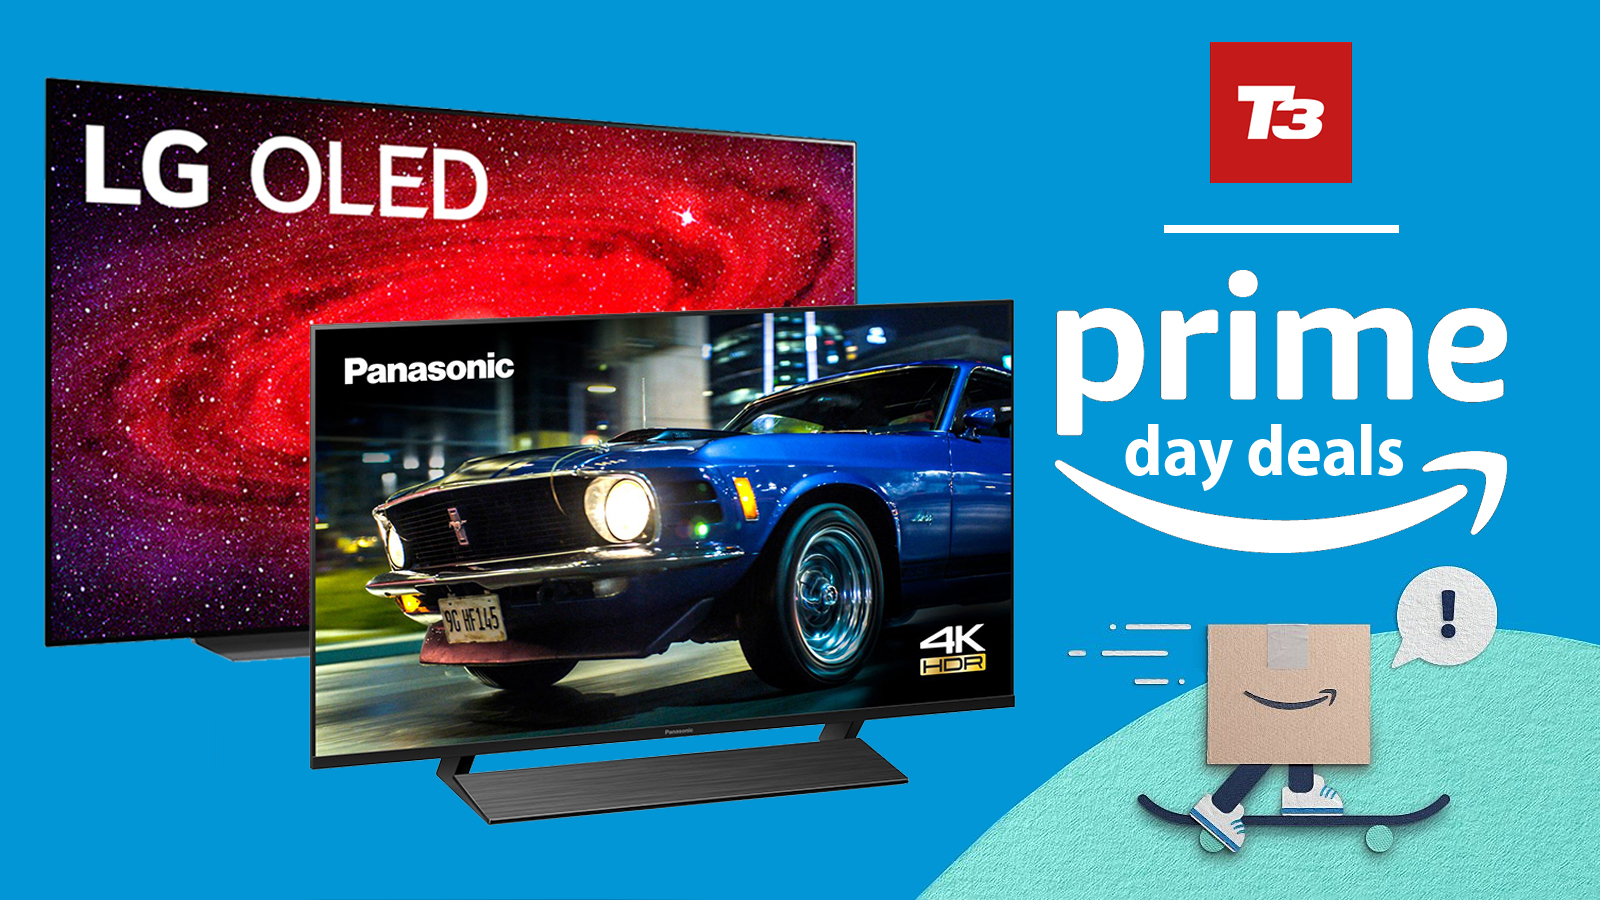 Amazon Prime Day 2020 Tv Deals Ttpgkzxksxkl1m Amazon prime day 2021